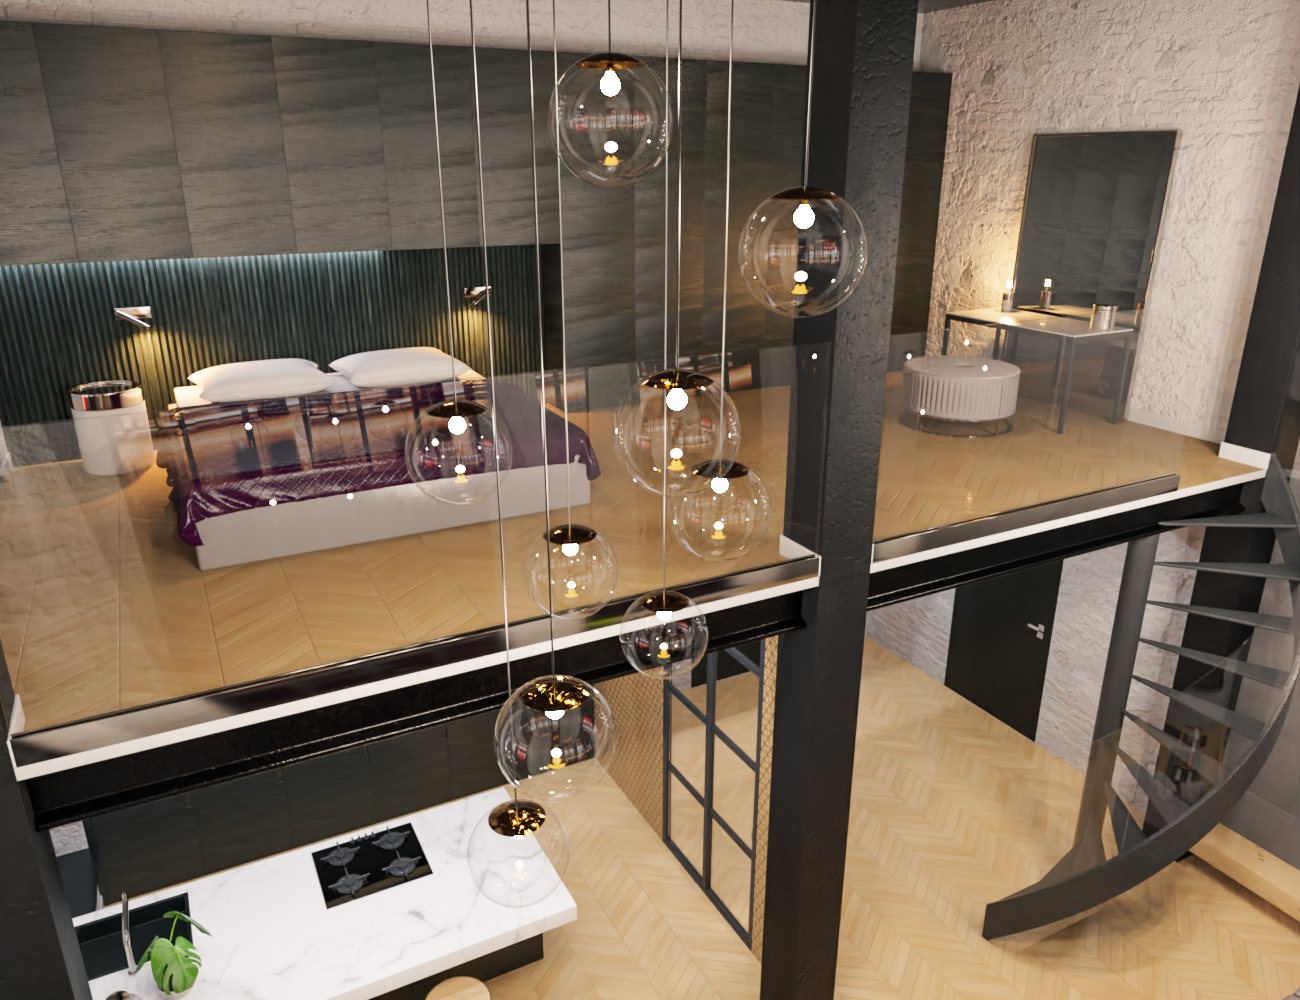 M8 Luxury Loft in Manhattan by: Modu8, 3D Models by Daz 3D